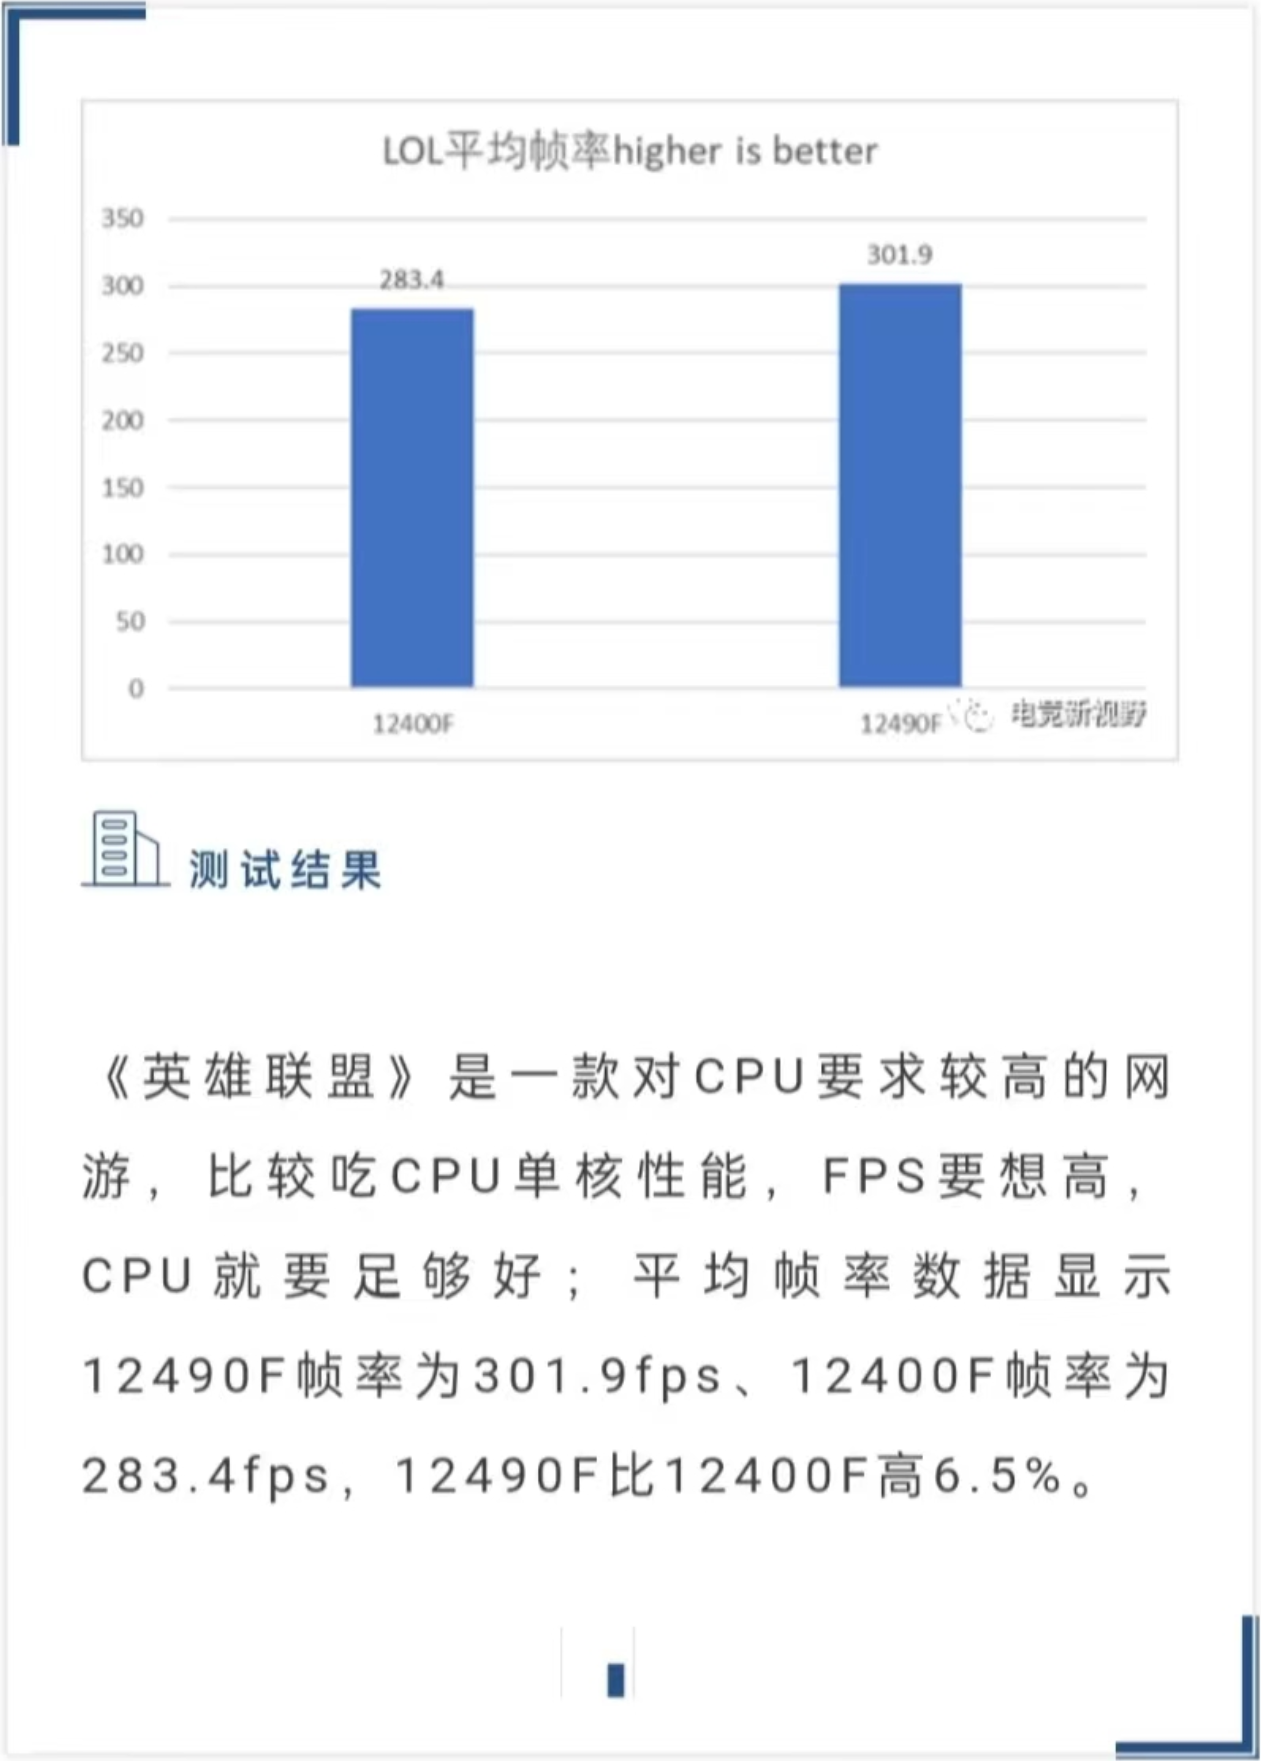 中國限定的Intel Core i5-12490F特價，台幣6千元即可入手| 4Gamers